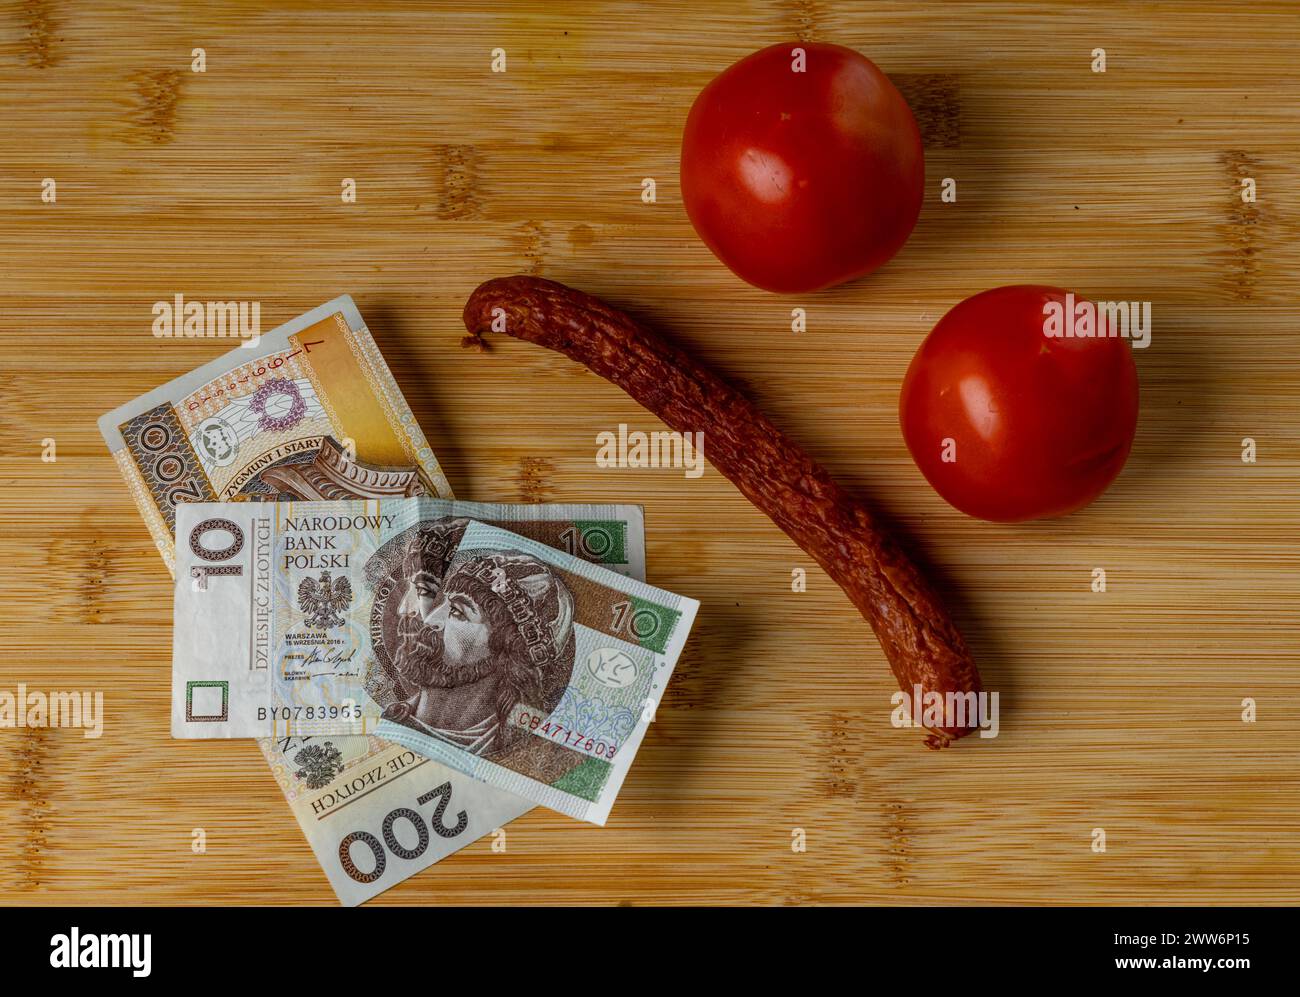 Augmentation des prix alimentaires en Pologne, pain, beurre sur une planche à découper, tomates, saucisses, TVA sur les aliments Pologne argent Banque D'Images